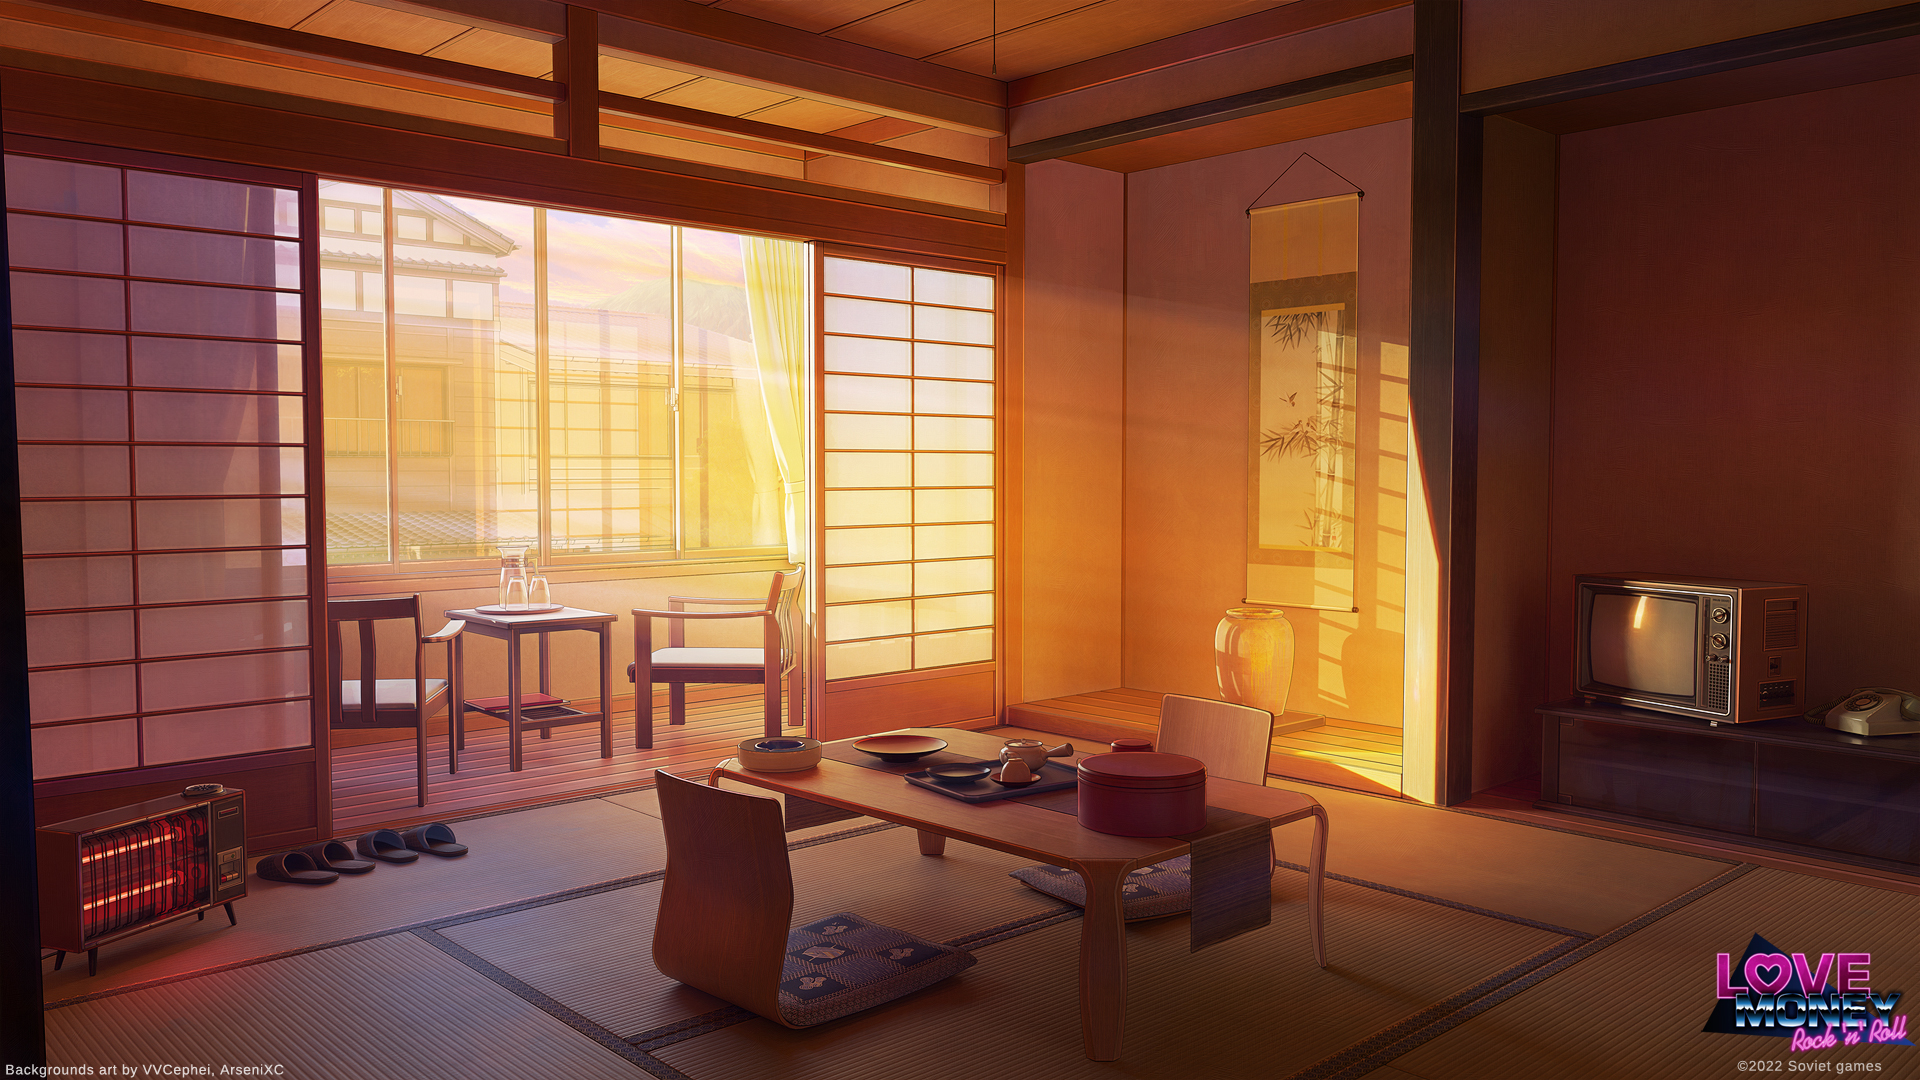 Bạn đã bao giờ ước muốn được ngắm nhìn hoàng hôn tuyệt đẹp từ một căn phòng Ryokan? Hãy nhấn vào hình ảnh để khám phá sự đẹp mộng mơ và yên bình của không gian truyền thống Nhật Bản này.